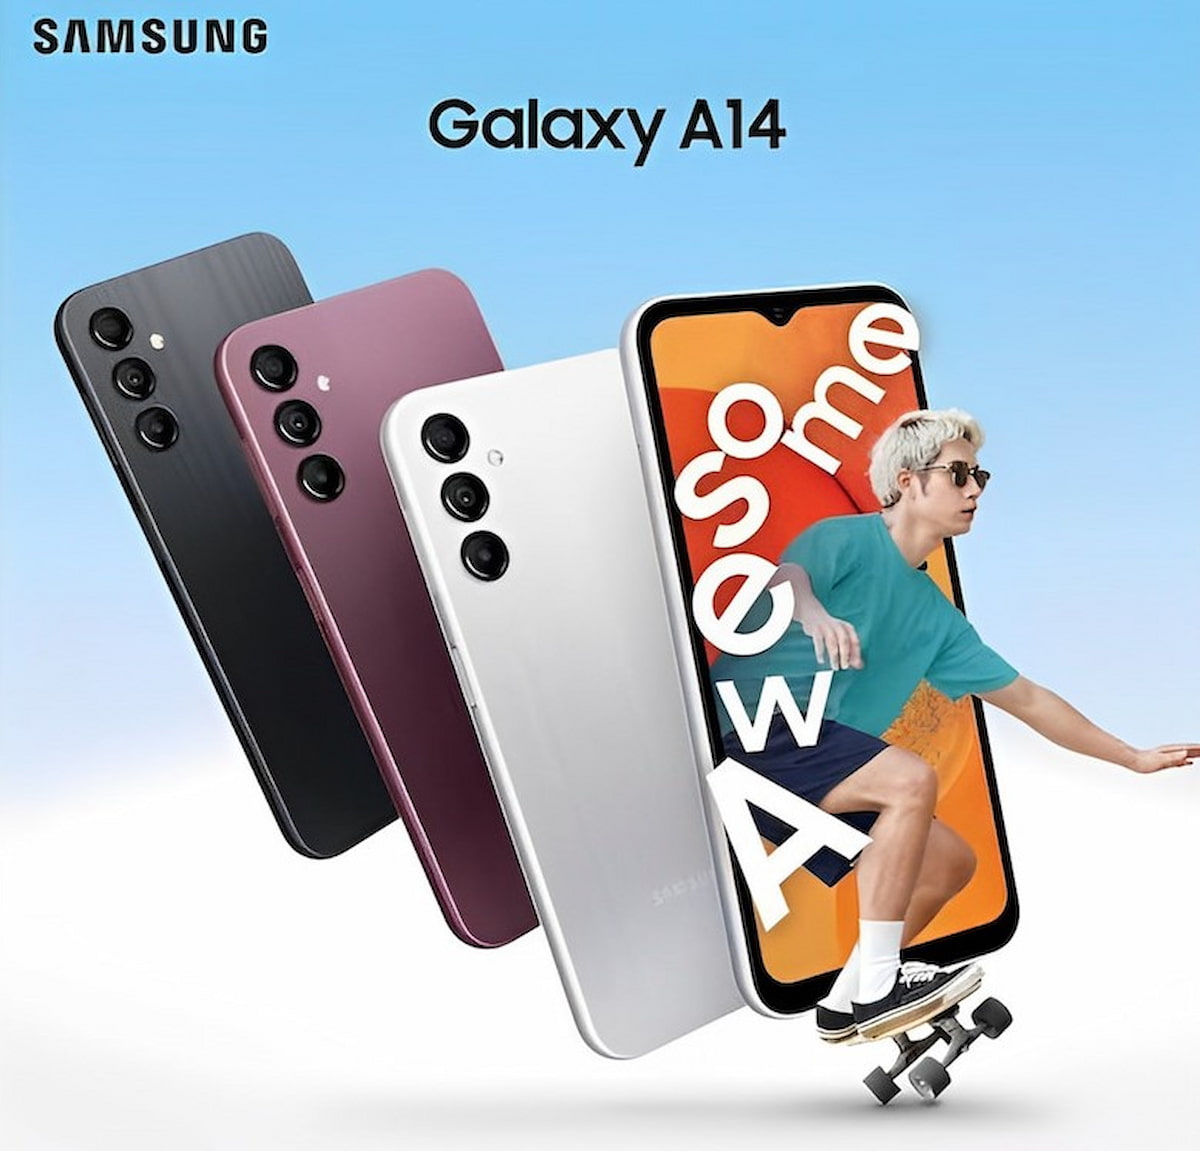 Samsung Galaxy A14 4G mang thiết kế đậm chất Gen Z